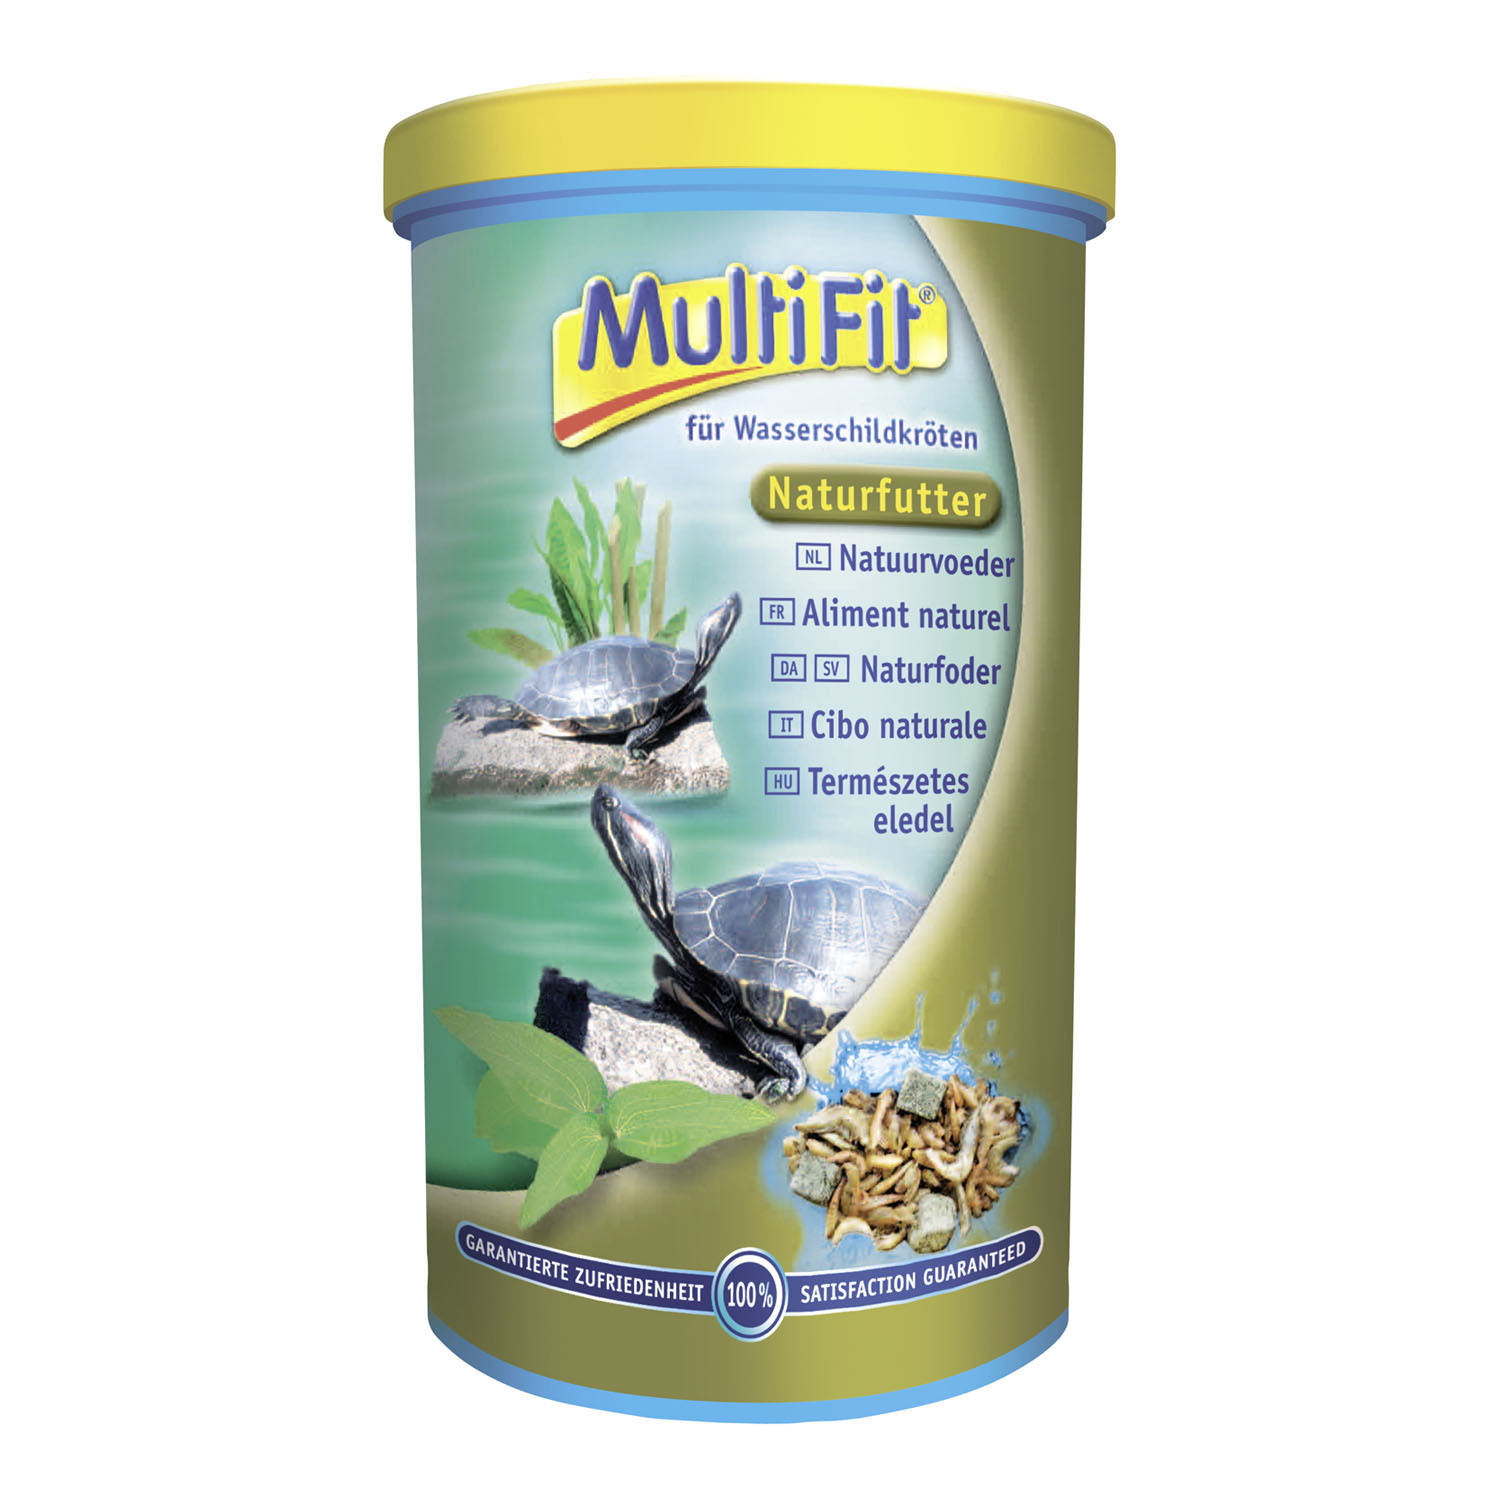 MultiFit Naturfutter für Wasserschildkröten 250ml